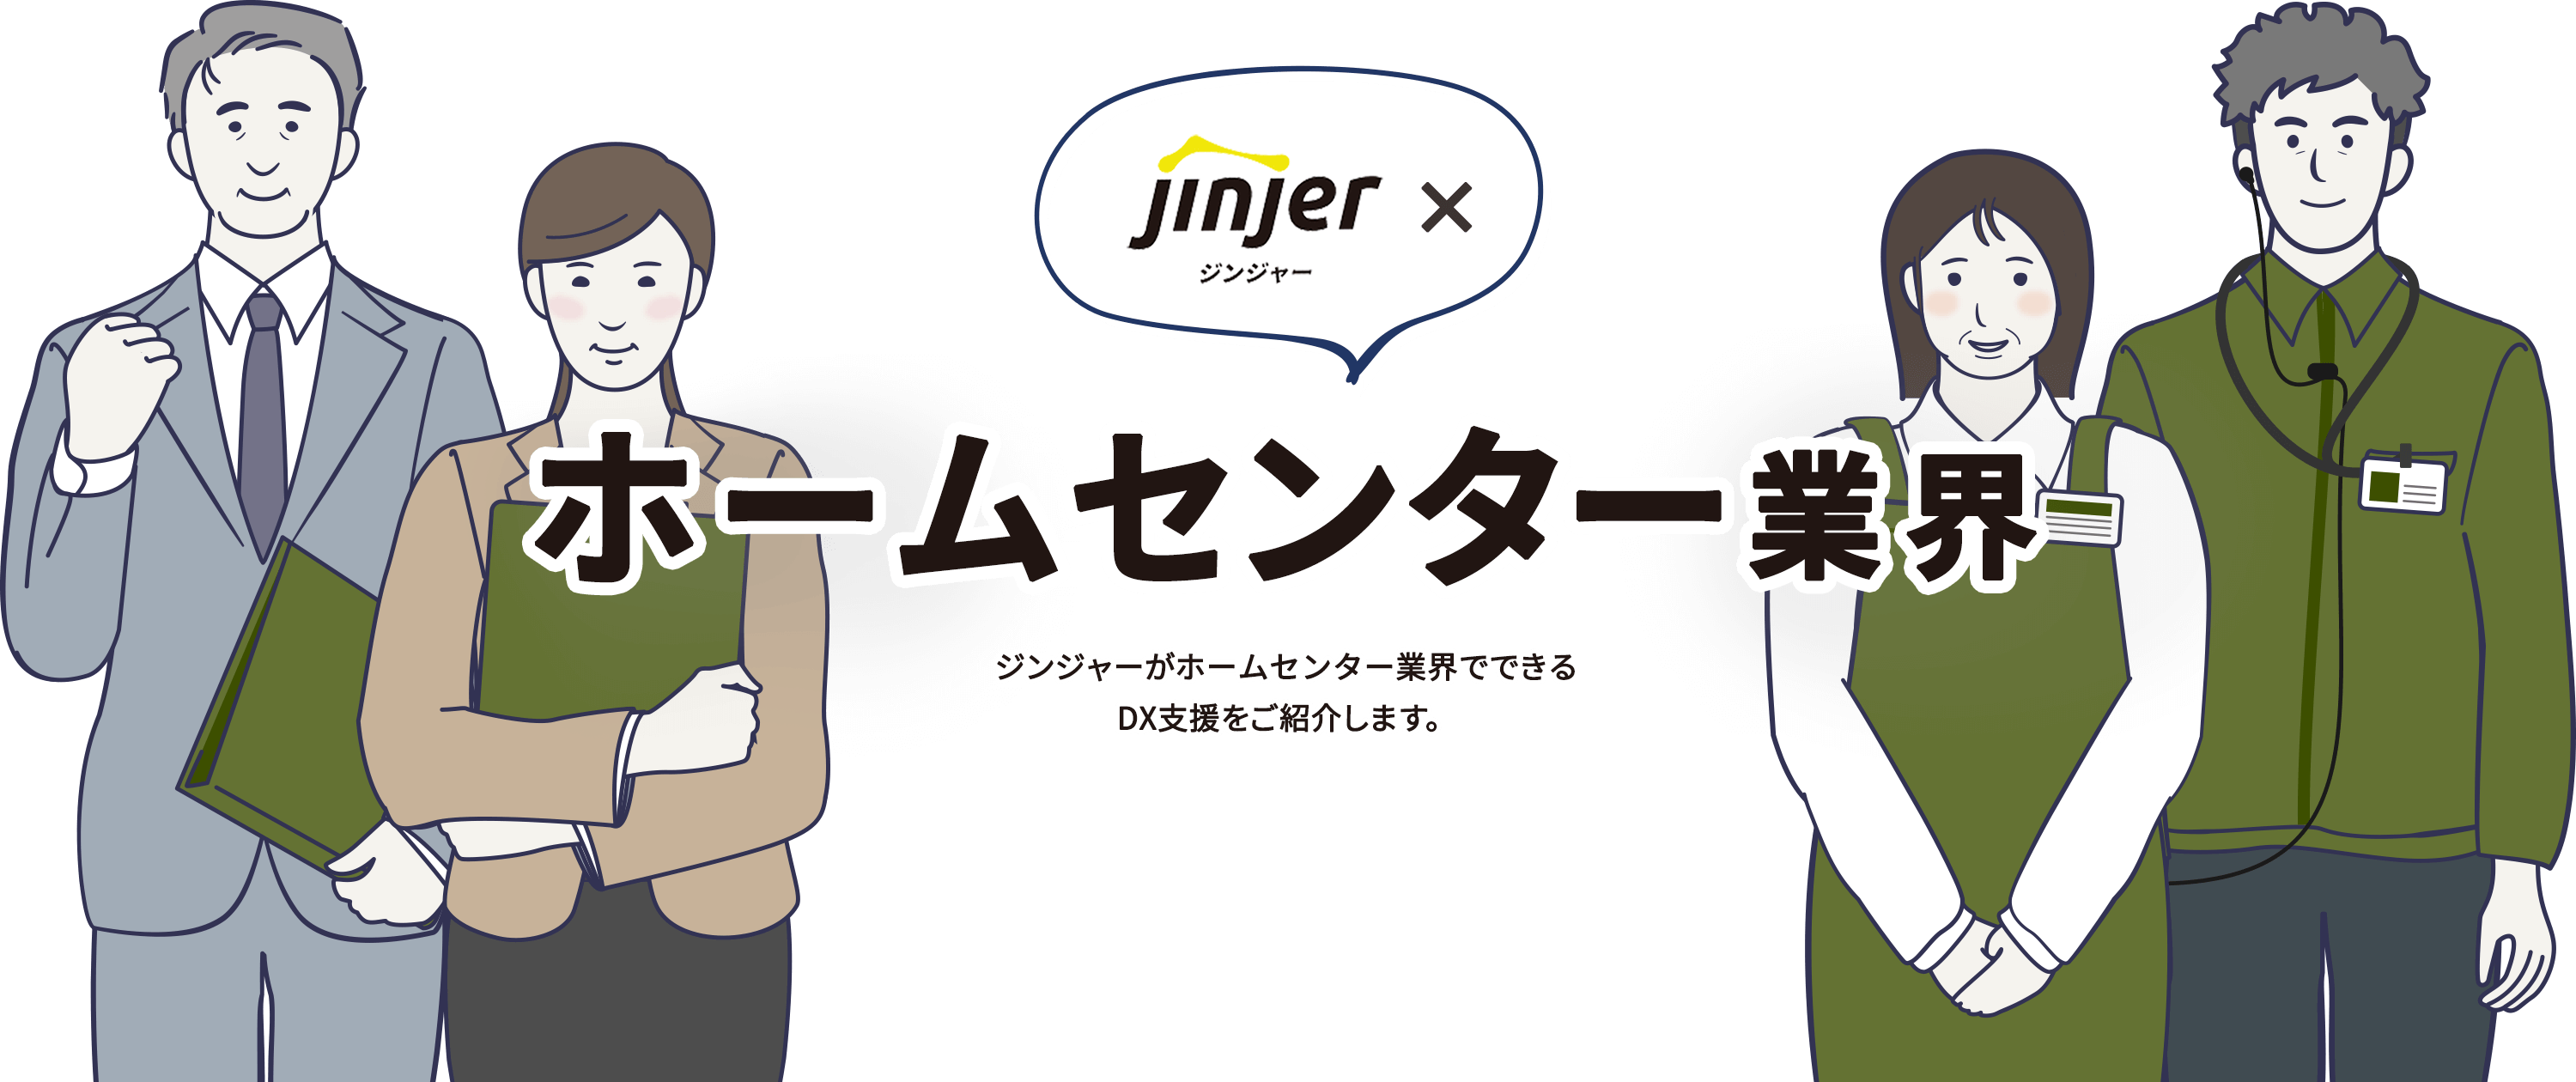 ジンジャー×ホームセンター業界 ジンジャーがホームセンター業界でできるDX支援をご紹介します。